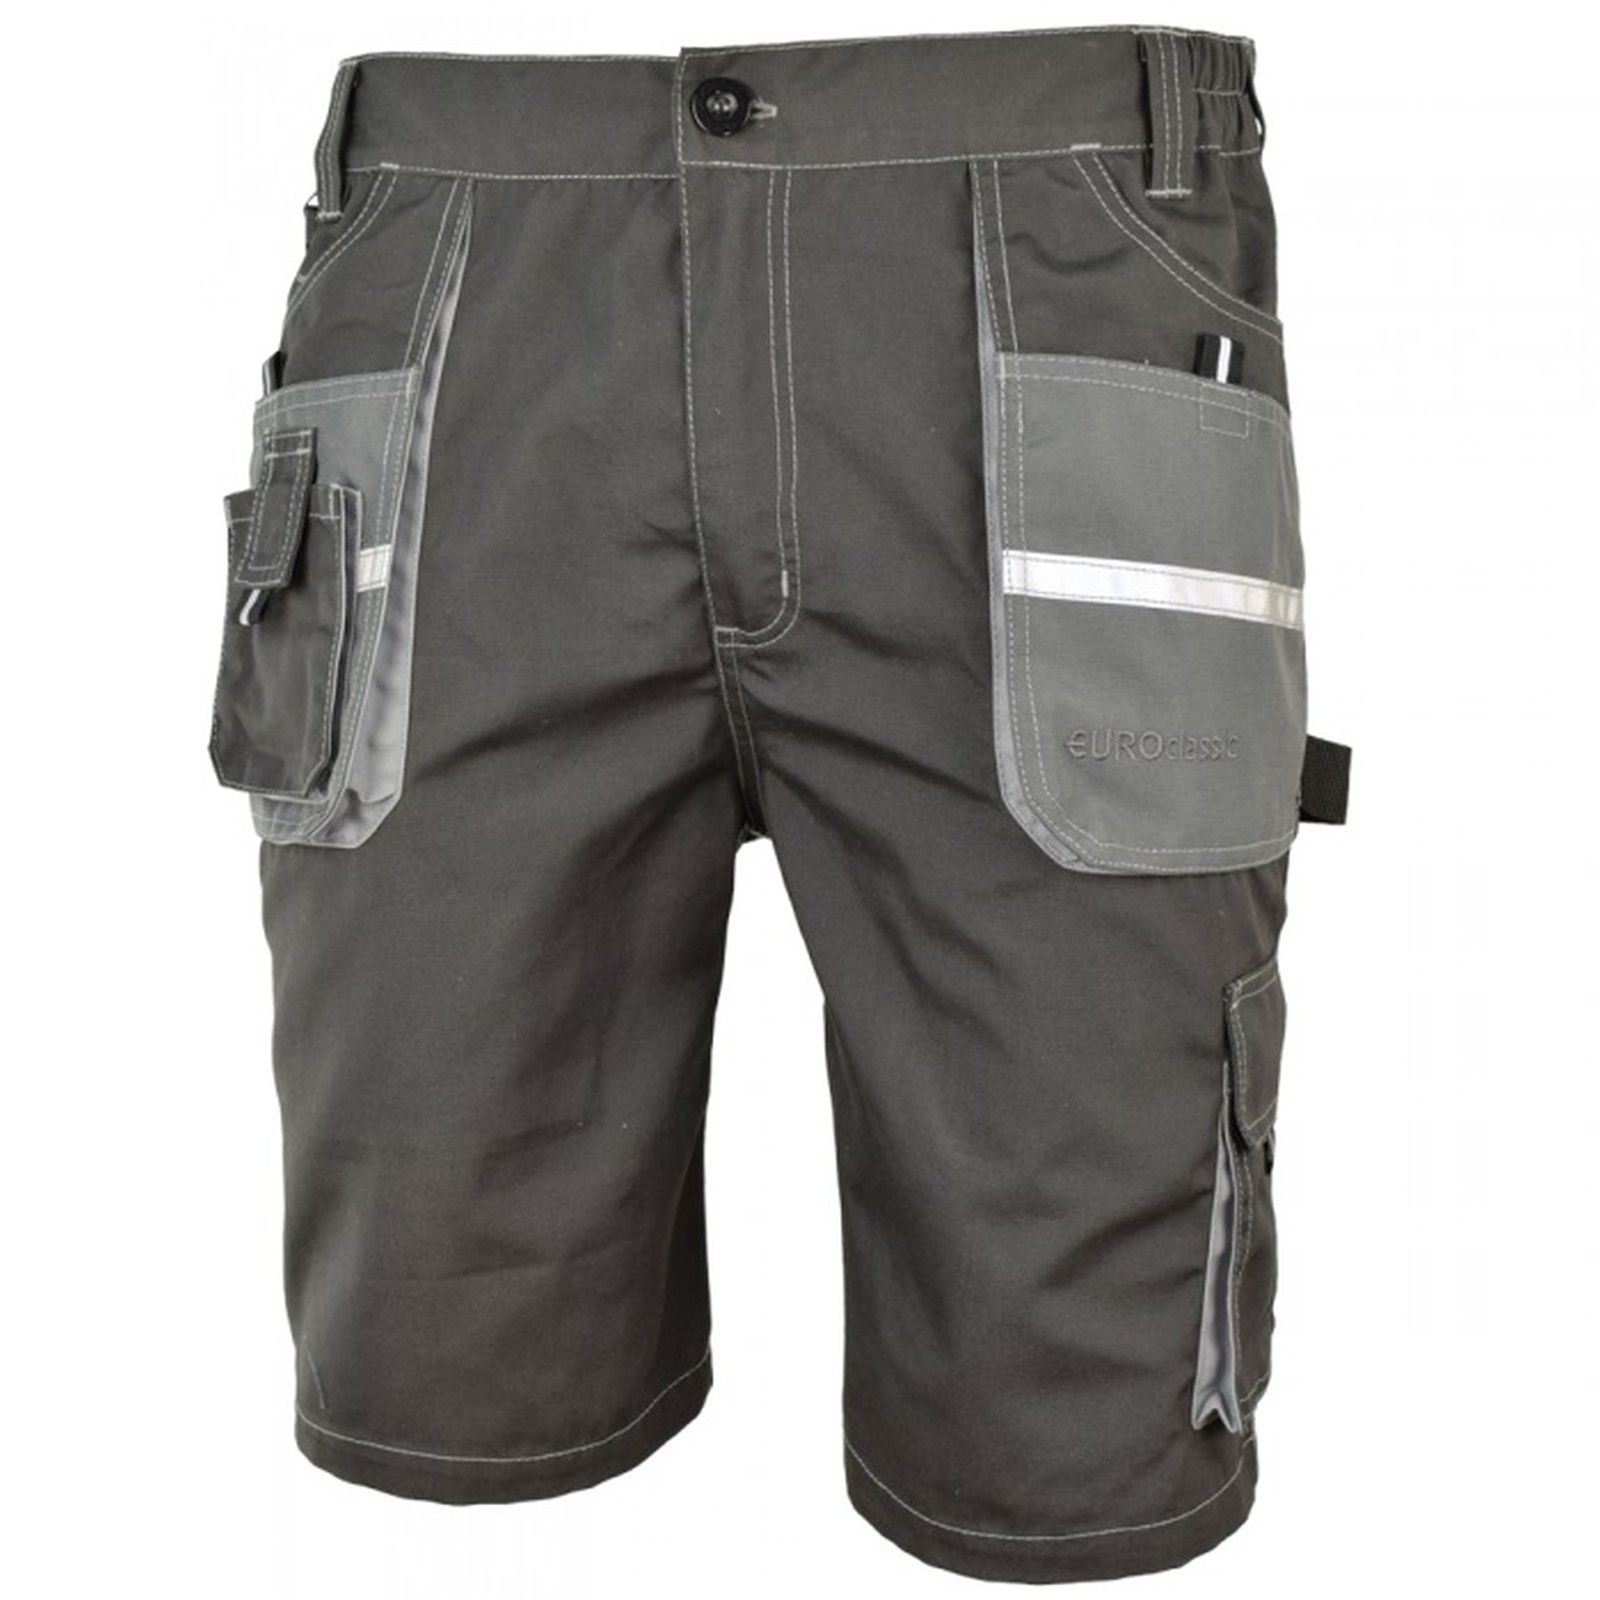 Arbeitslatzhose Arbeitshose Arbeitsjacke Shorts Arbeitsbekleidung grau/ schwarz 